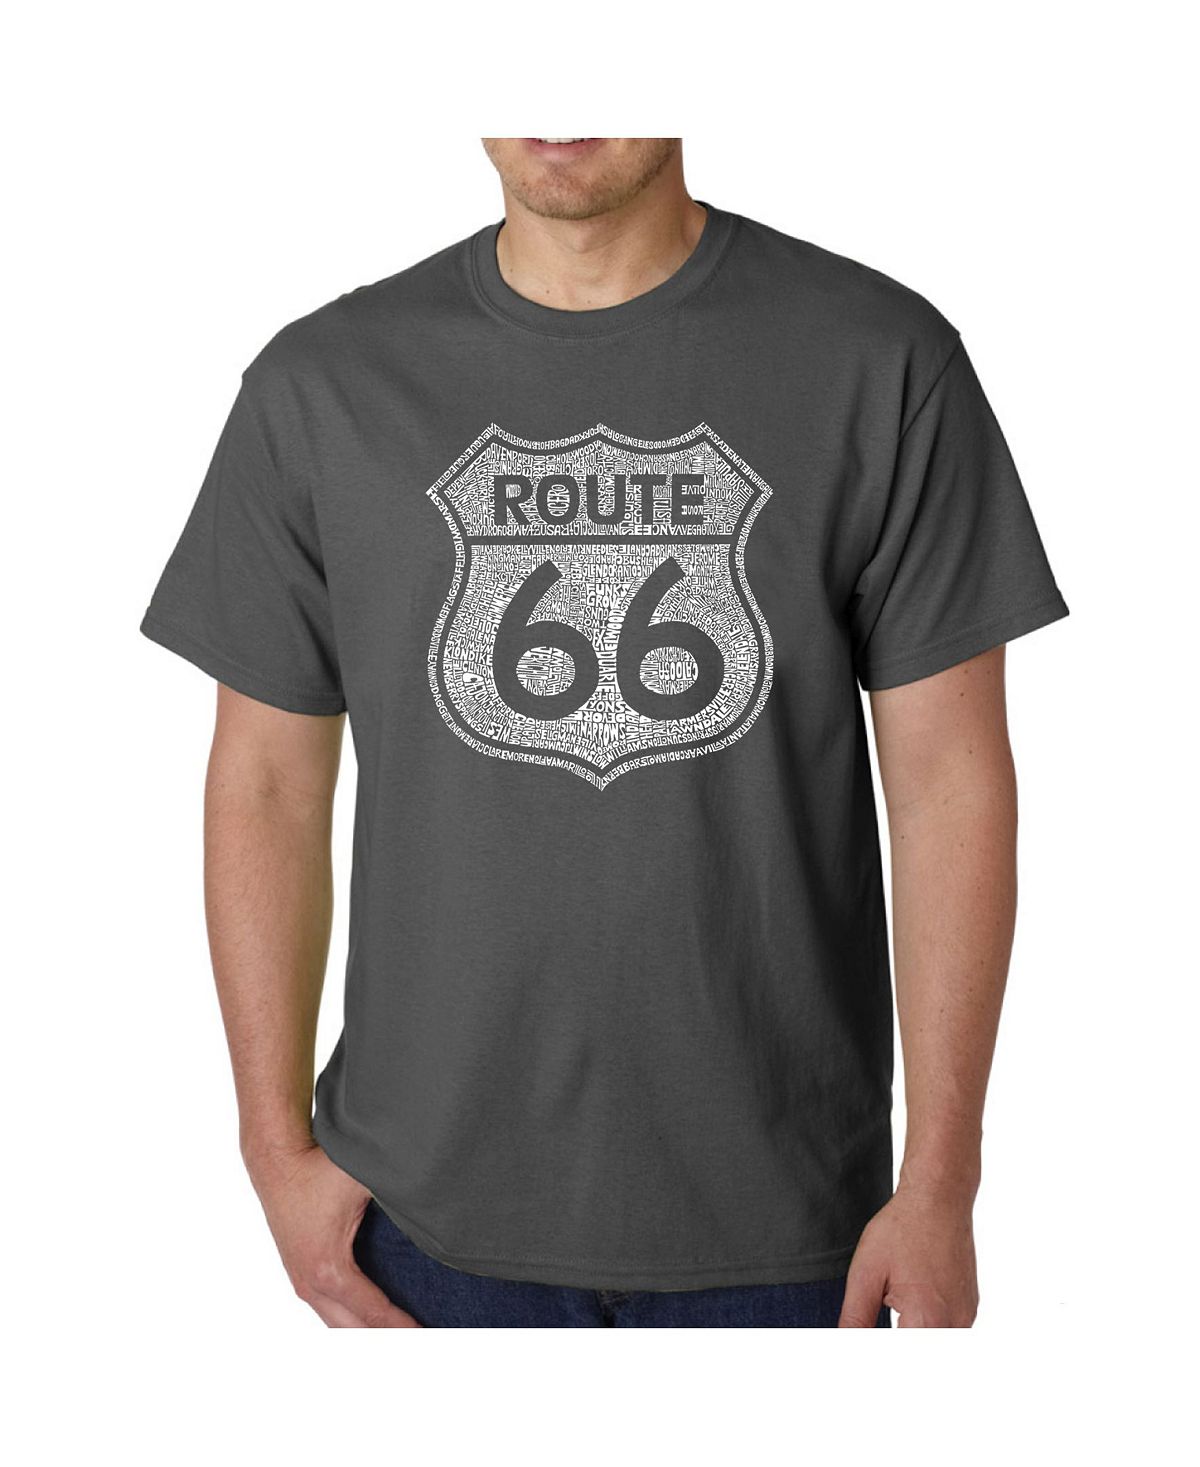 Мужская футболка с рисунком Word Art — Route 66 LA Pop Art это останется навсегда